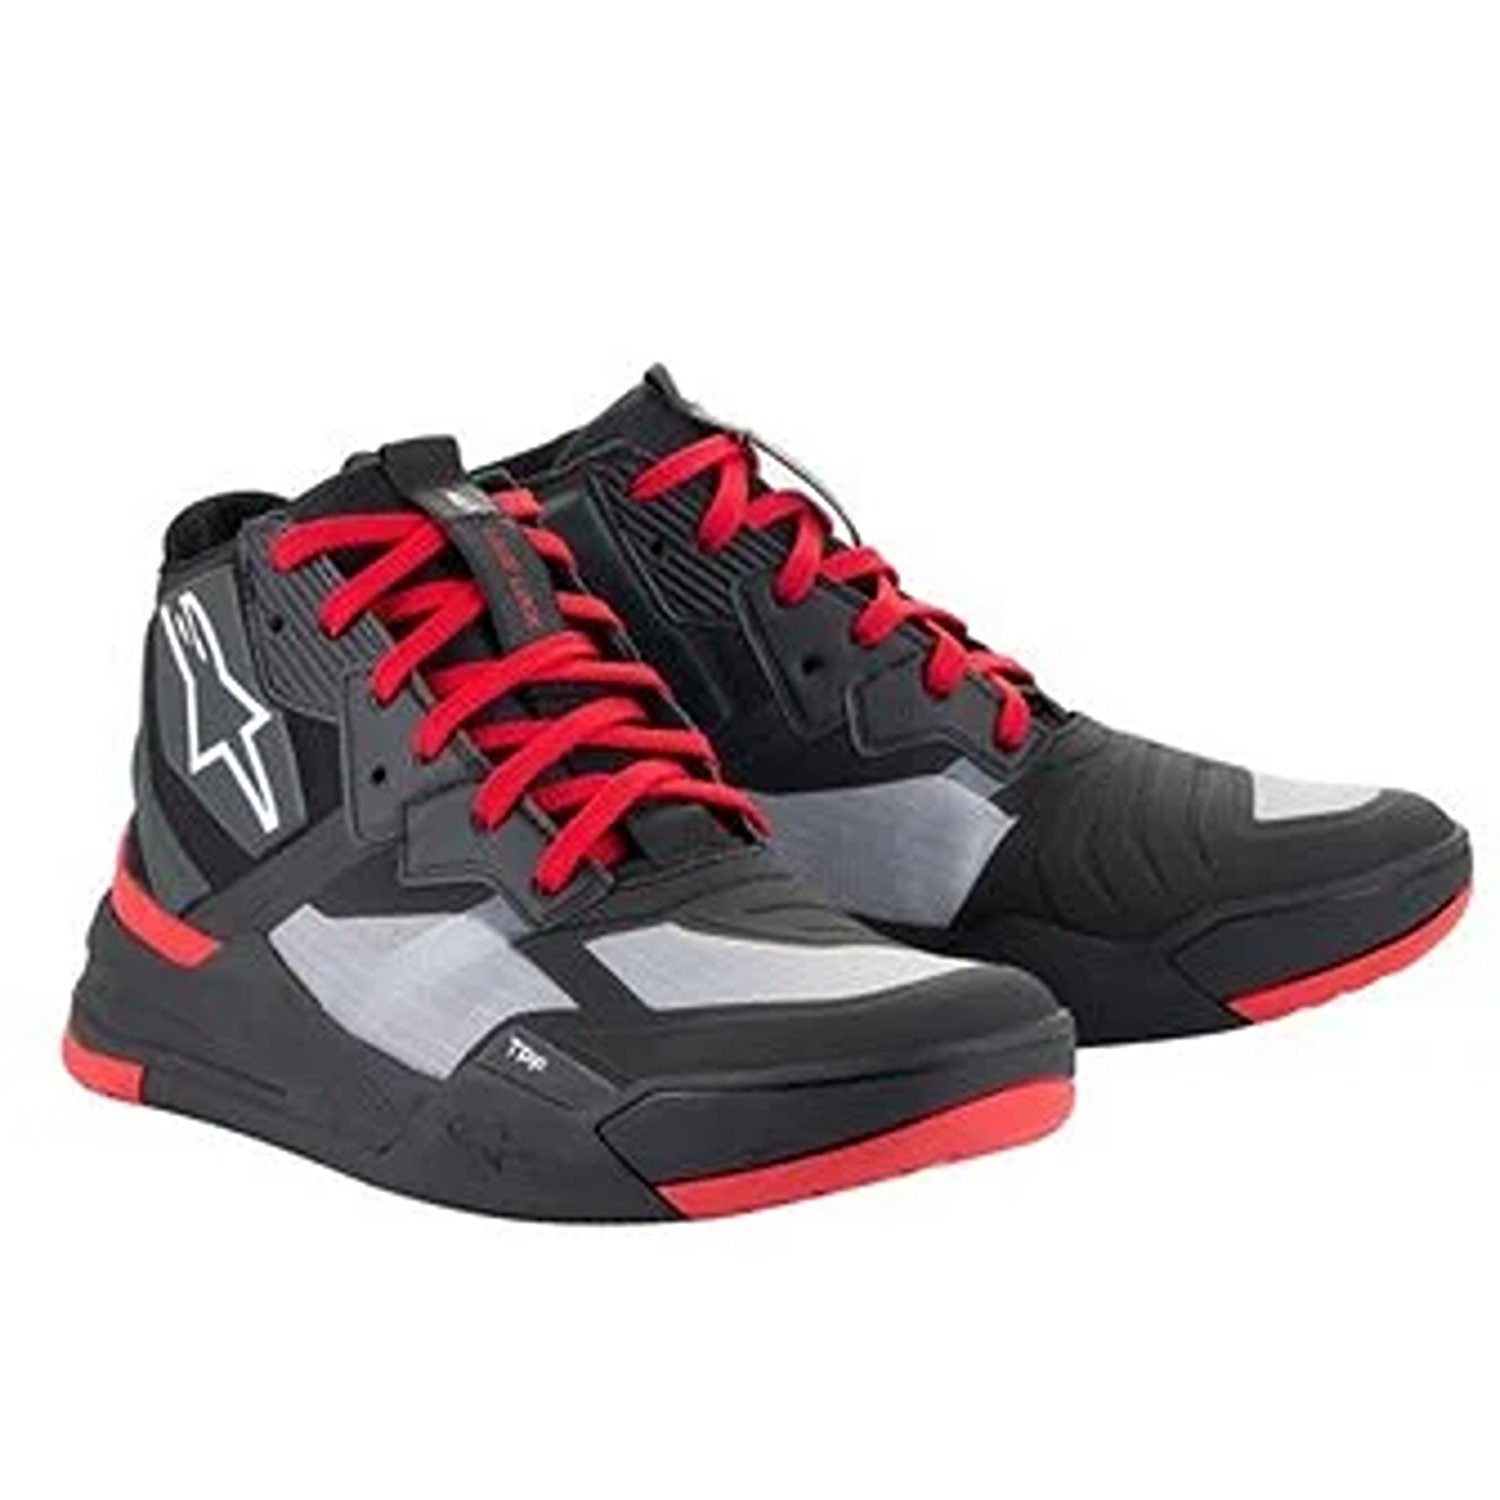 Image of Alpinestars Speedflight Shoes Black Bright Red White Größe US 75